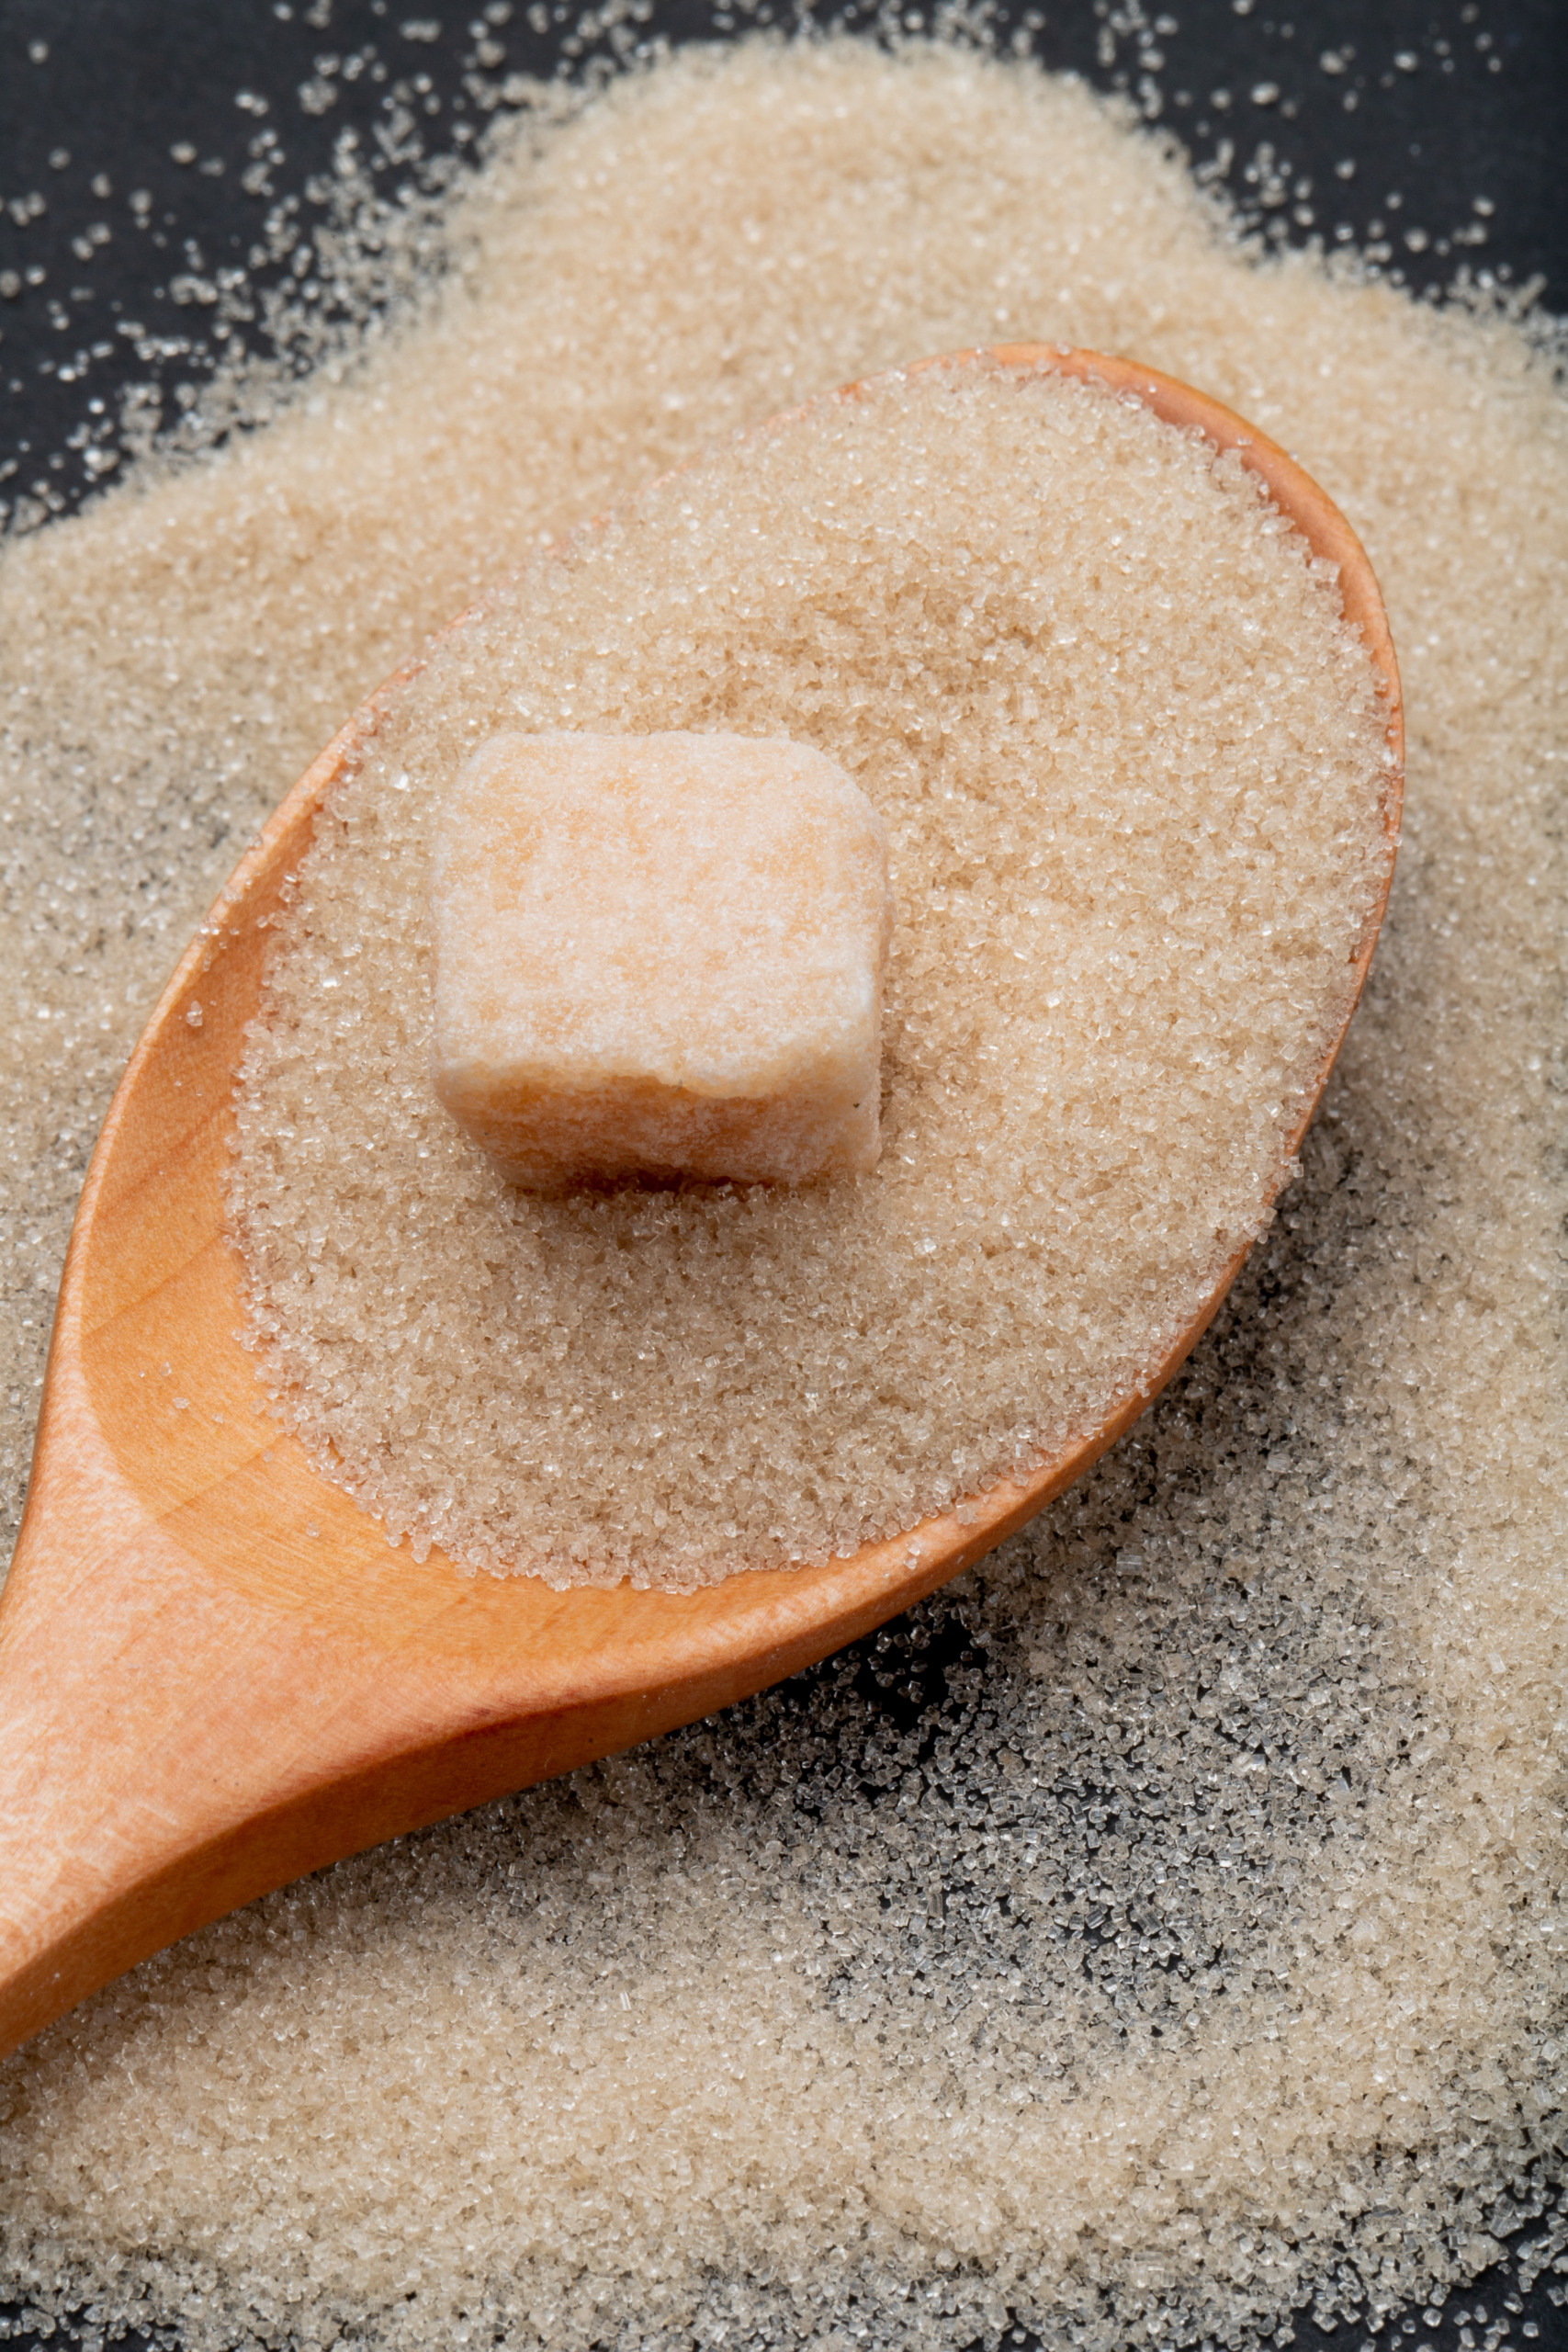 Açúcar: Participação nas negociações no mercado spot foi mais baixa nesta temporada em relação à passada